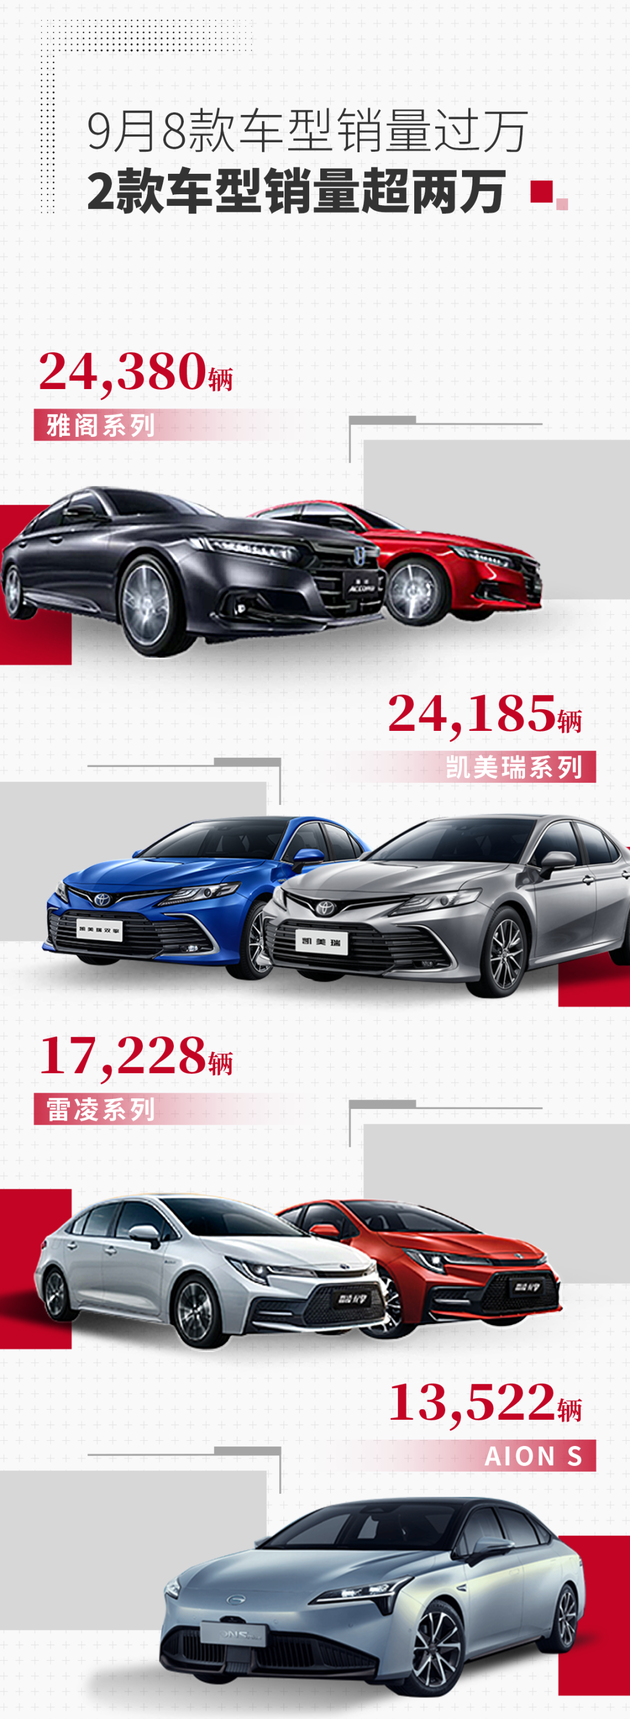 广汽集团1-9月销量182.50万辆 同比增长22%